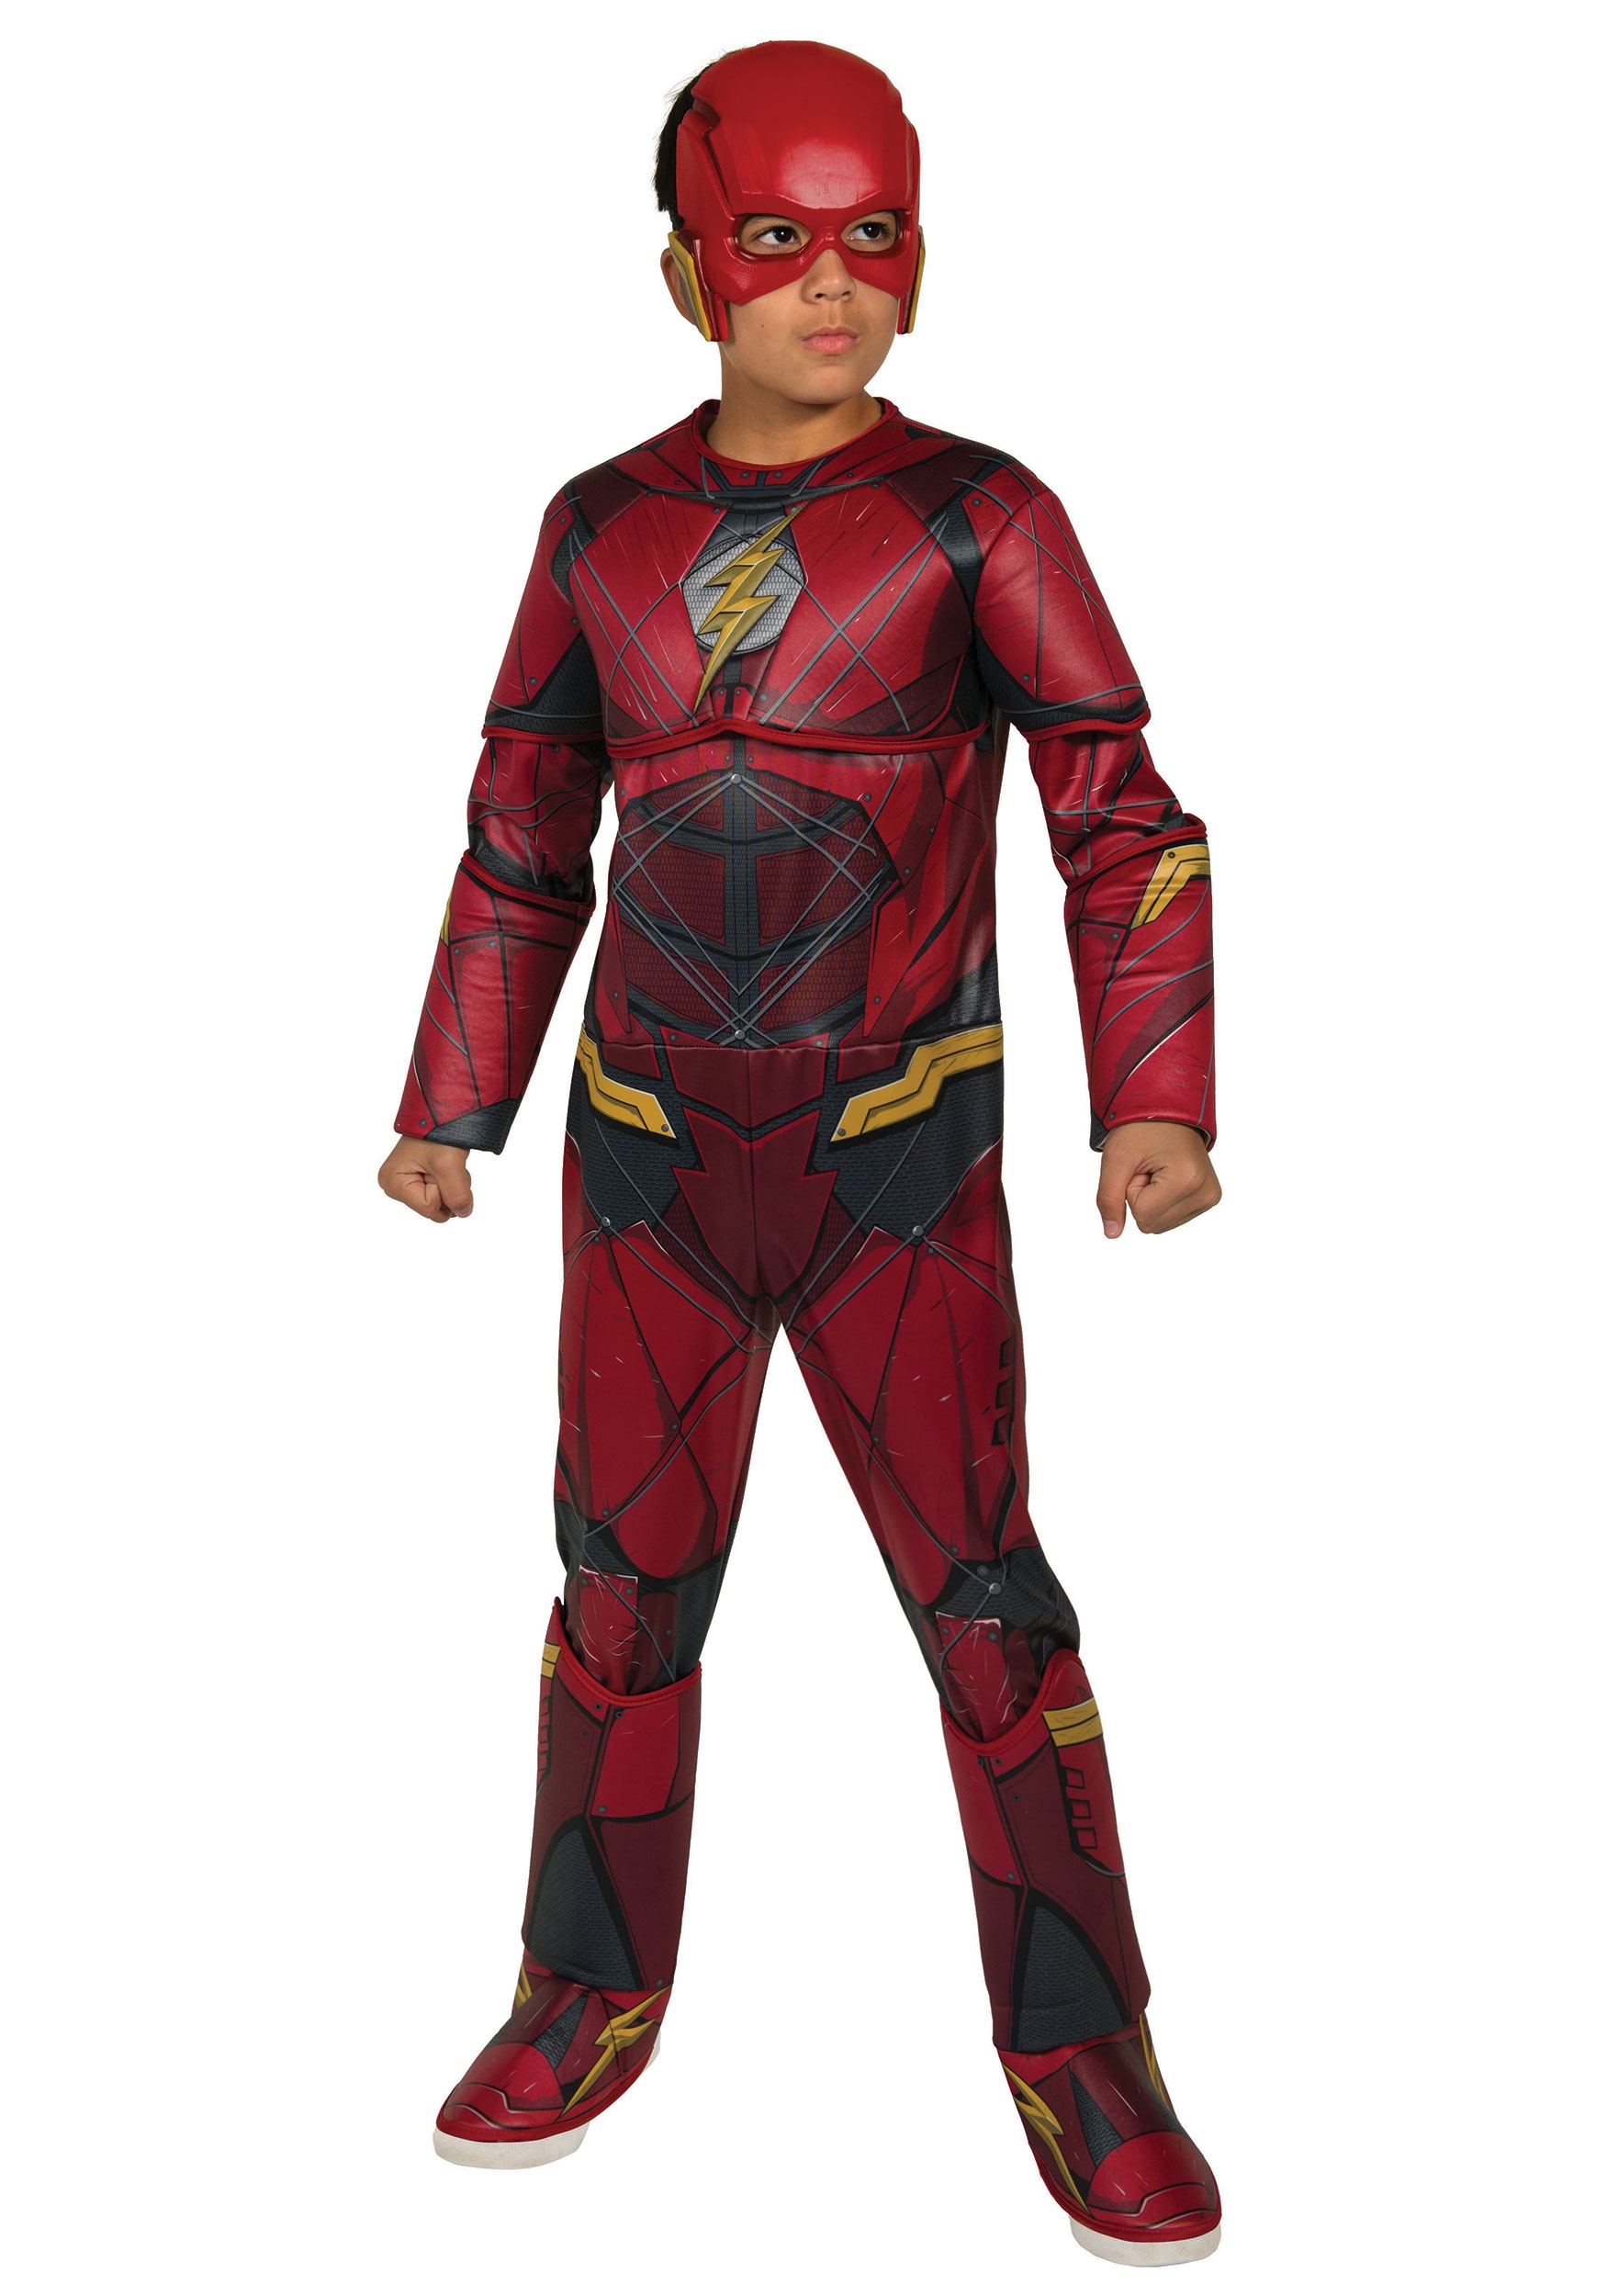 Les enfants garçons super-héros flash COSTUME ROBE FANTAISIE bande dessinée costume enfants semaine